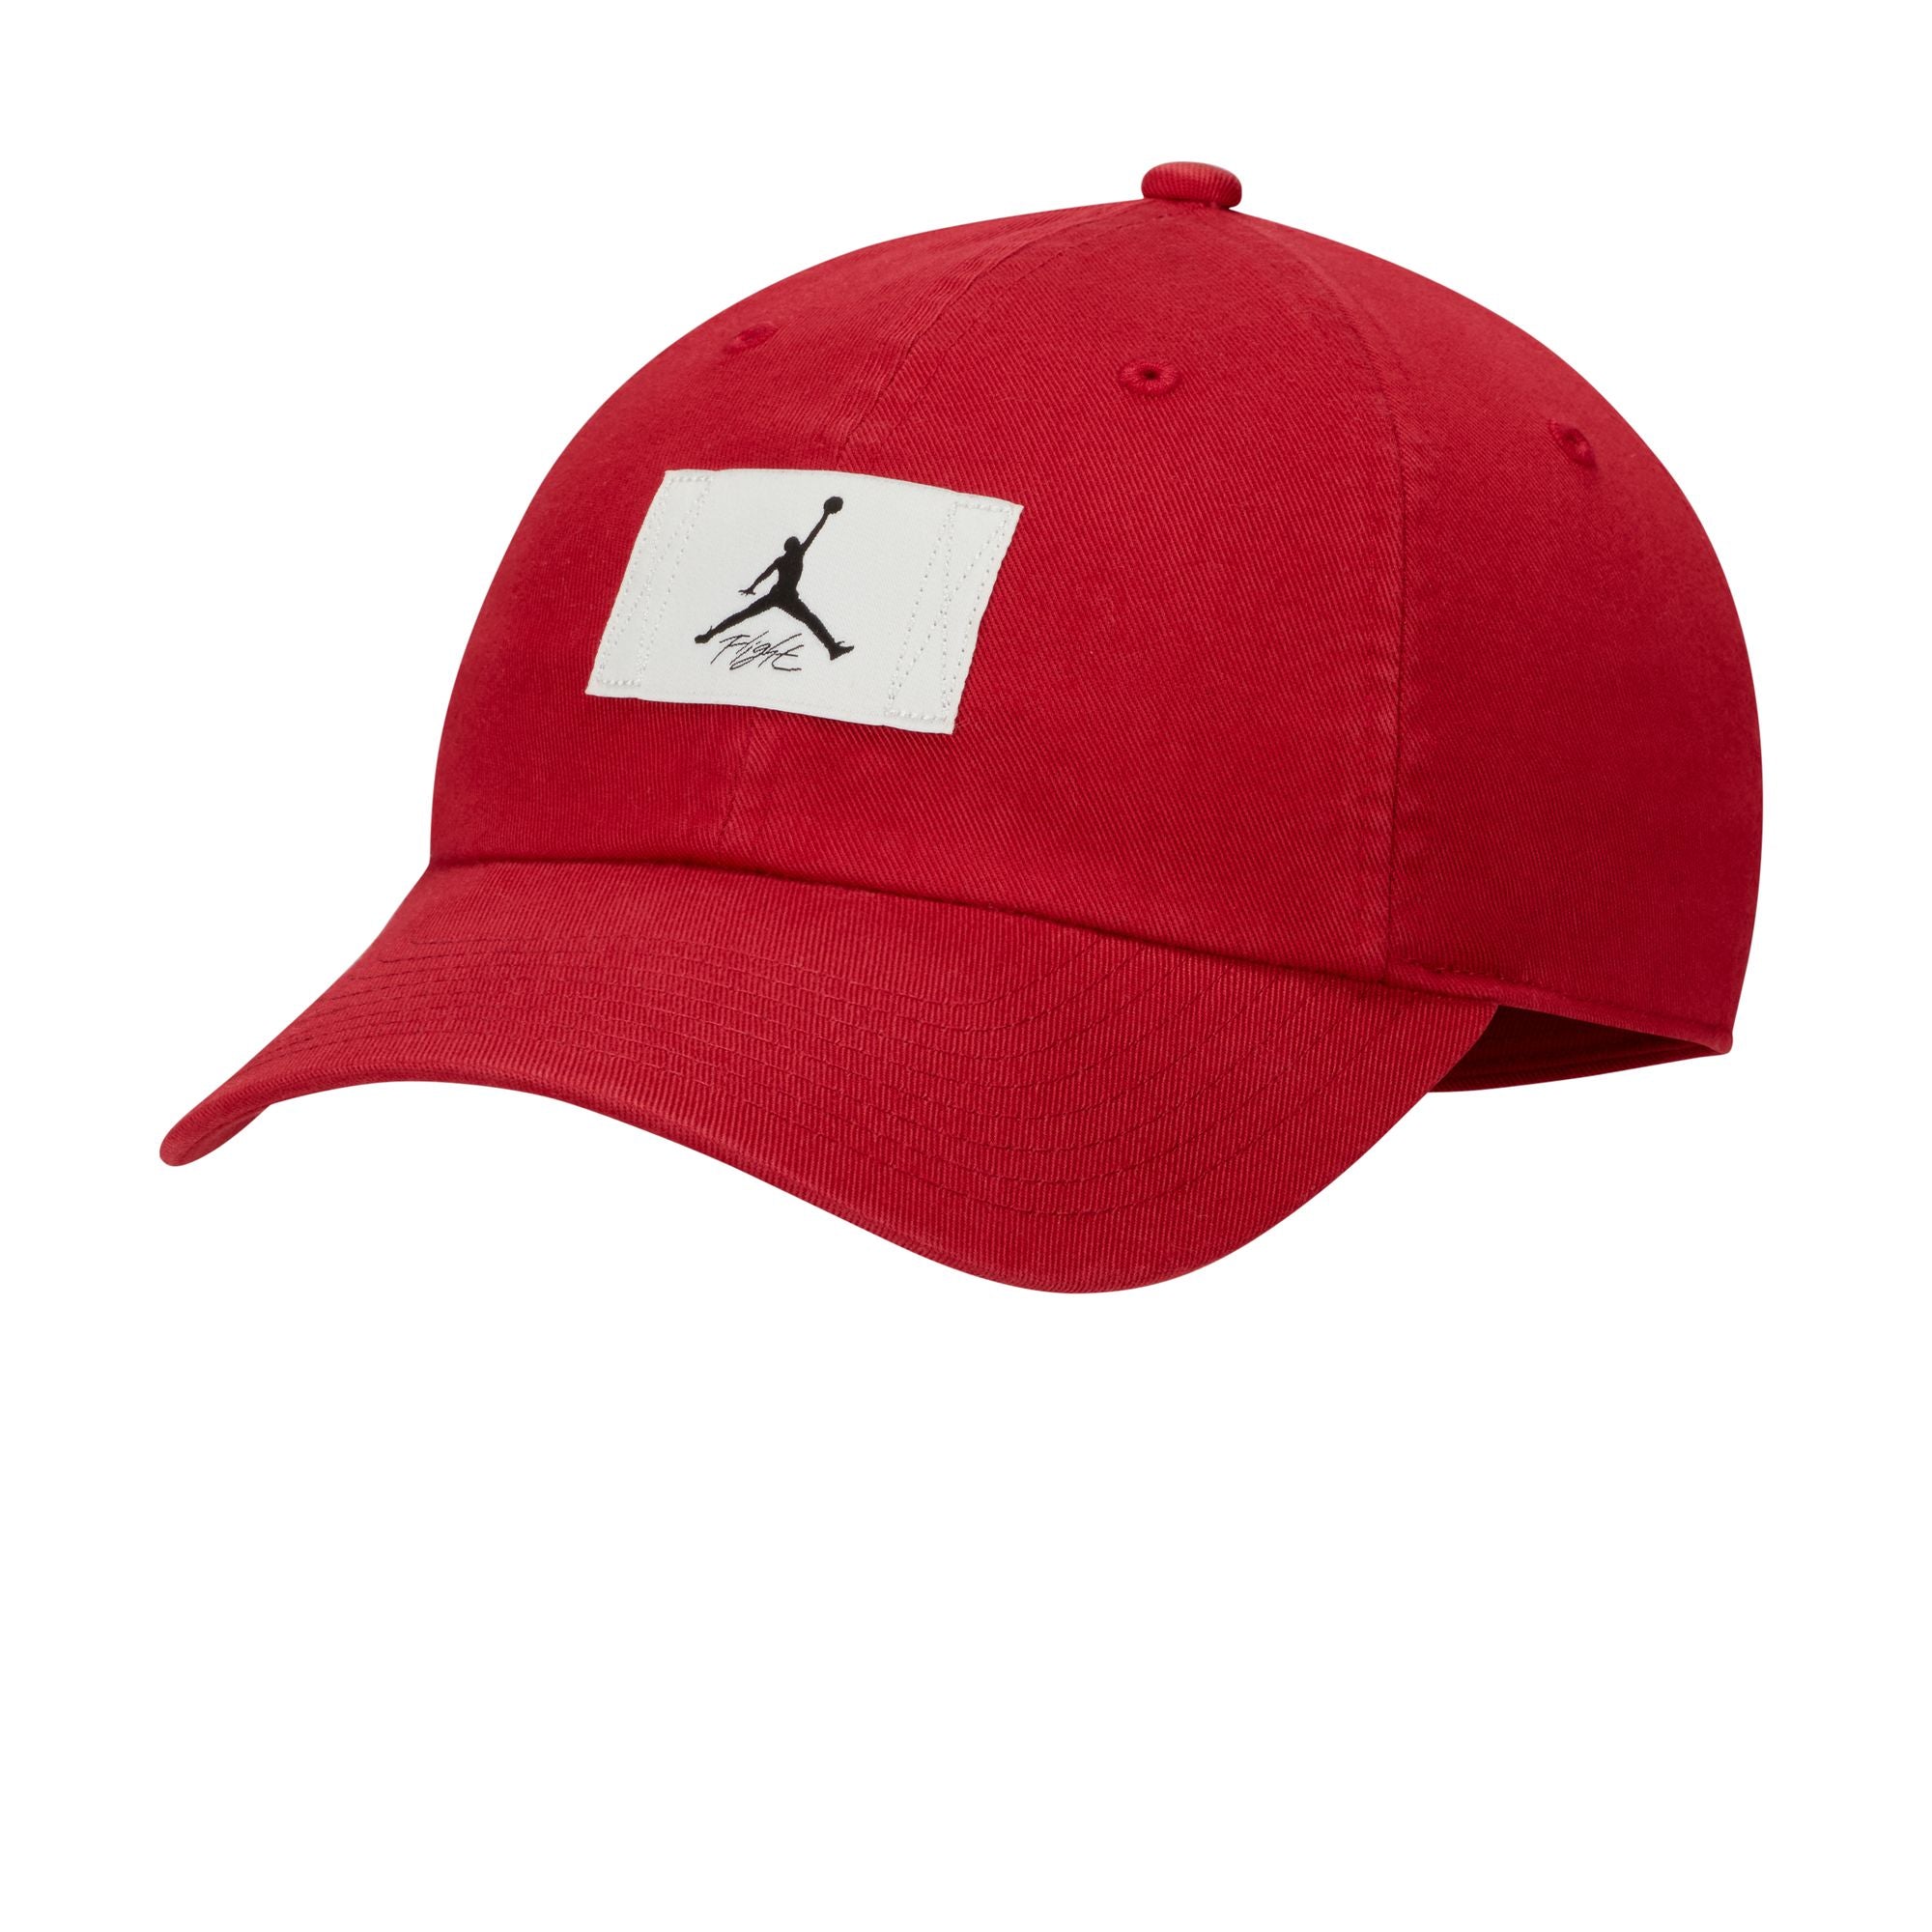 JORDAN CLUB CAP ADJUSTABLE HAT